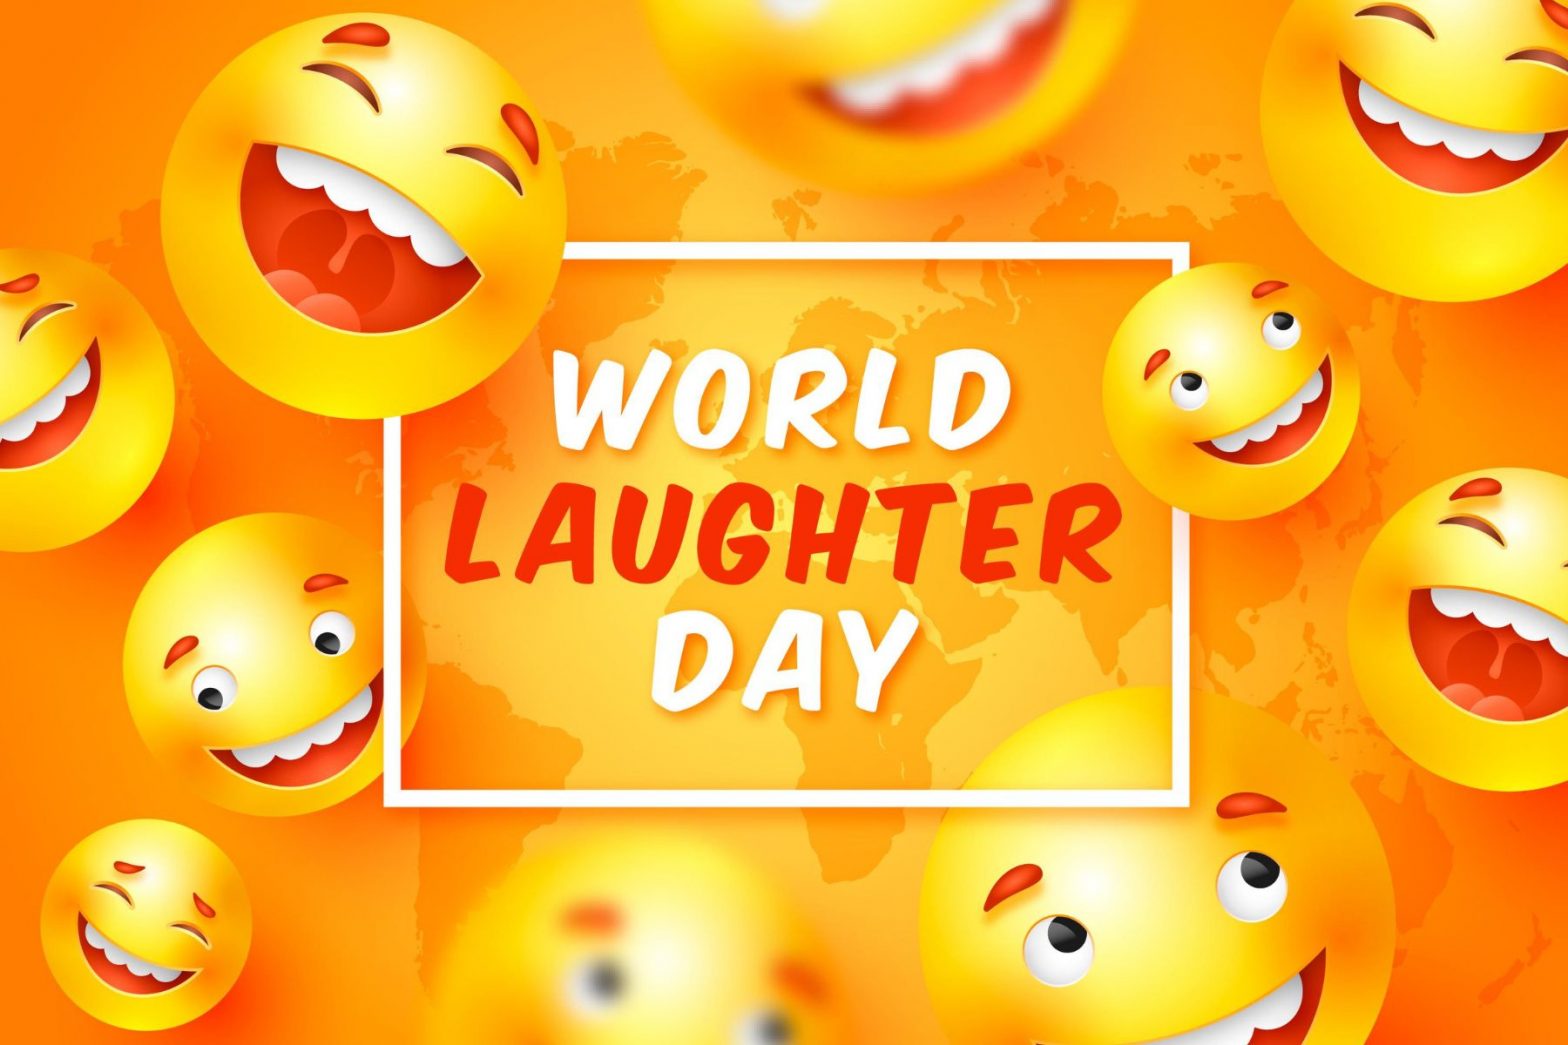 World Laughter Day Quotes in Hindi: वर्ल्ड लाफ्टर डे आज, इन कोट्स और मैसेजेस से करें अपने दोस्तों और रिश्तेदारों को विश